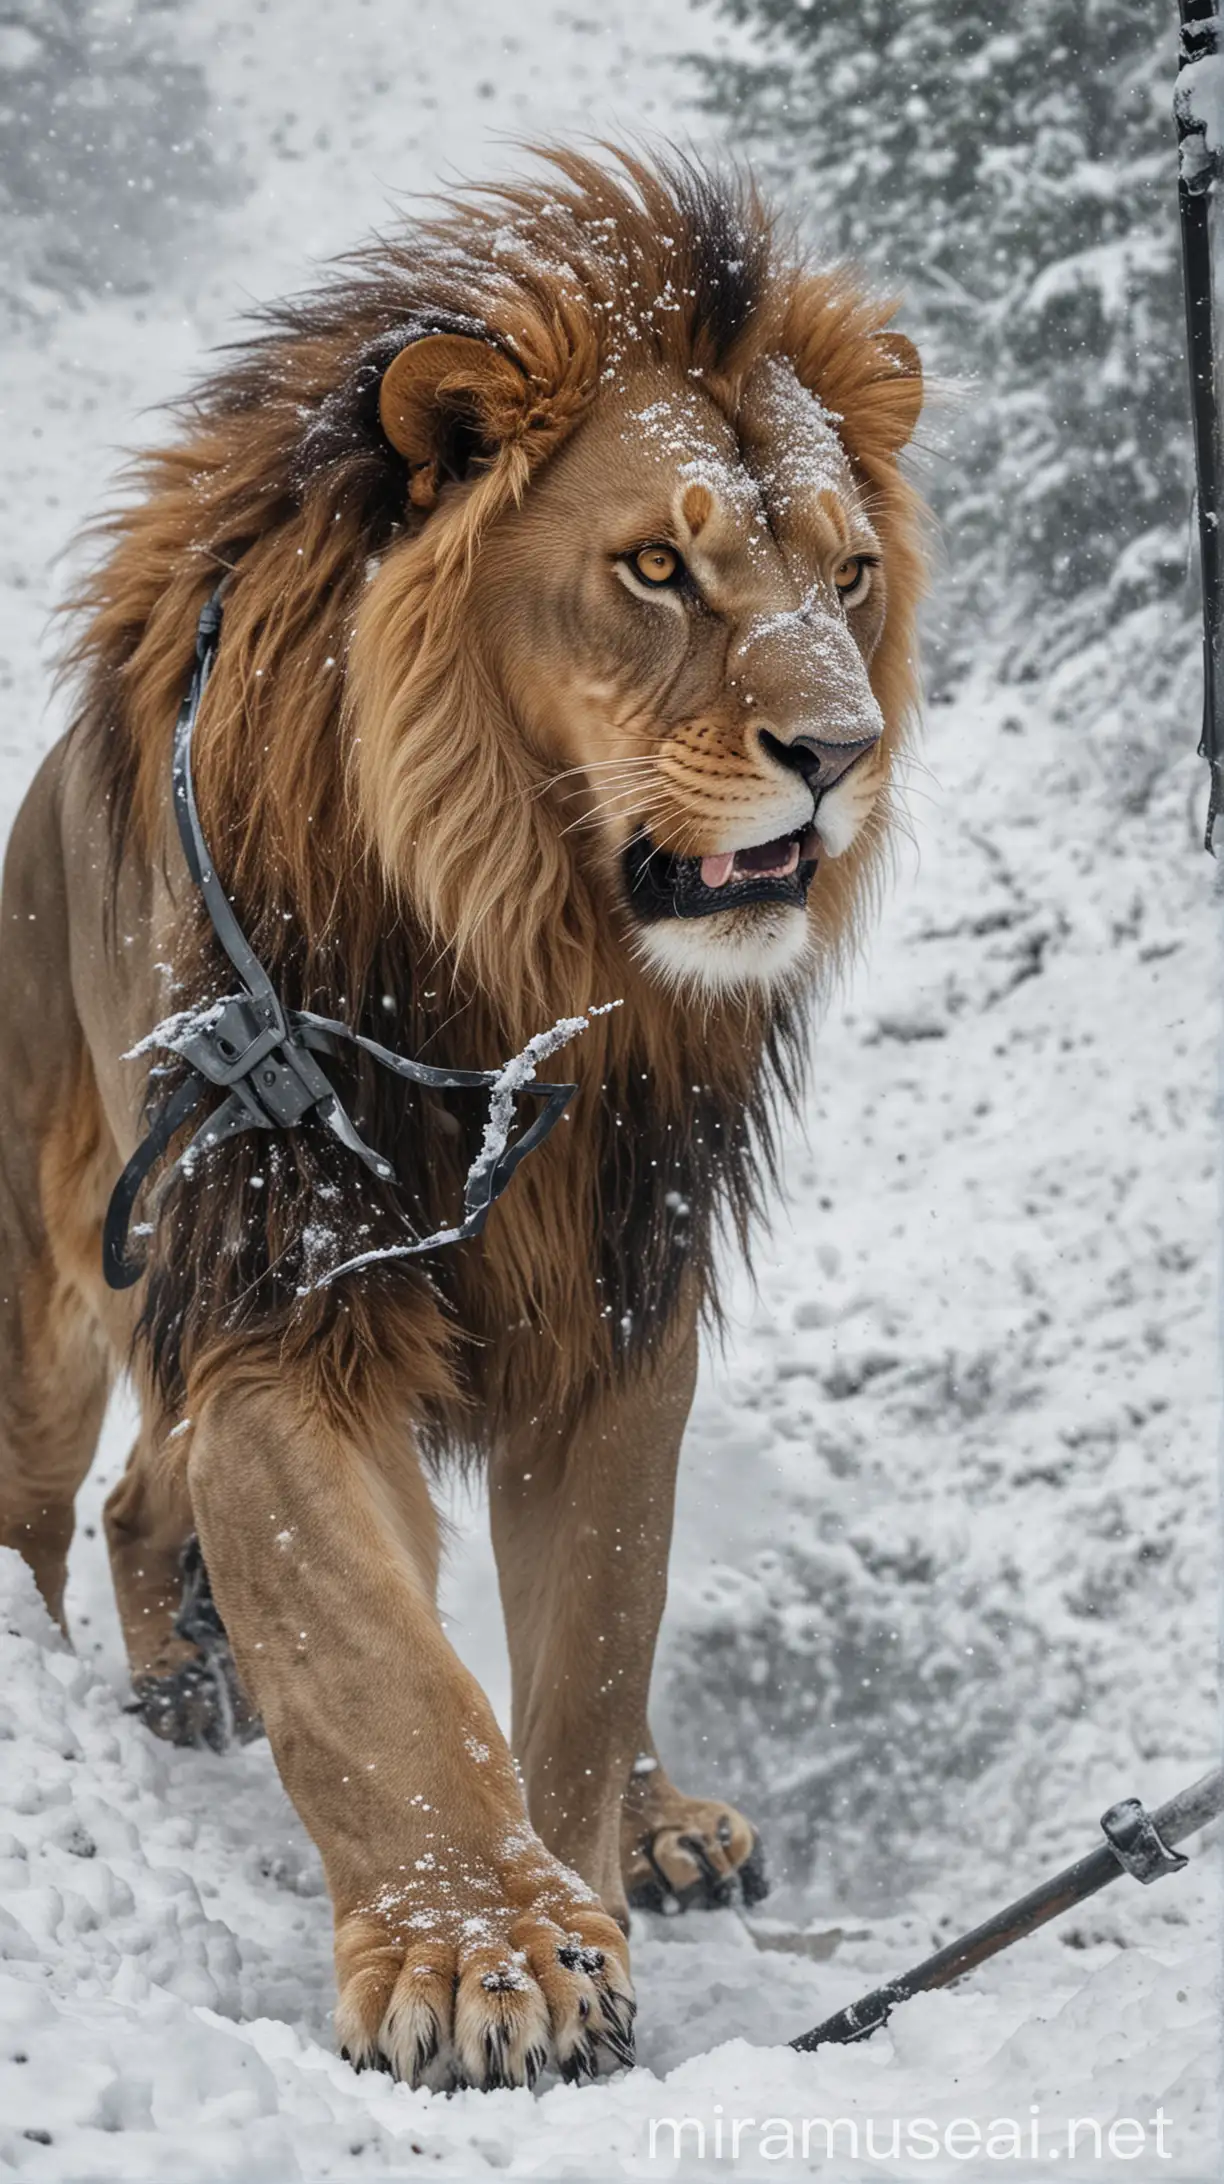 Brave Soldier Confronts Ferocious Lion in Snowy Battle